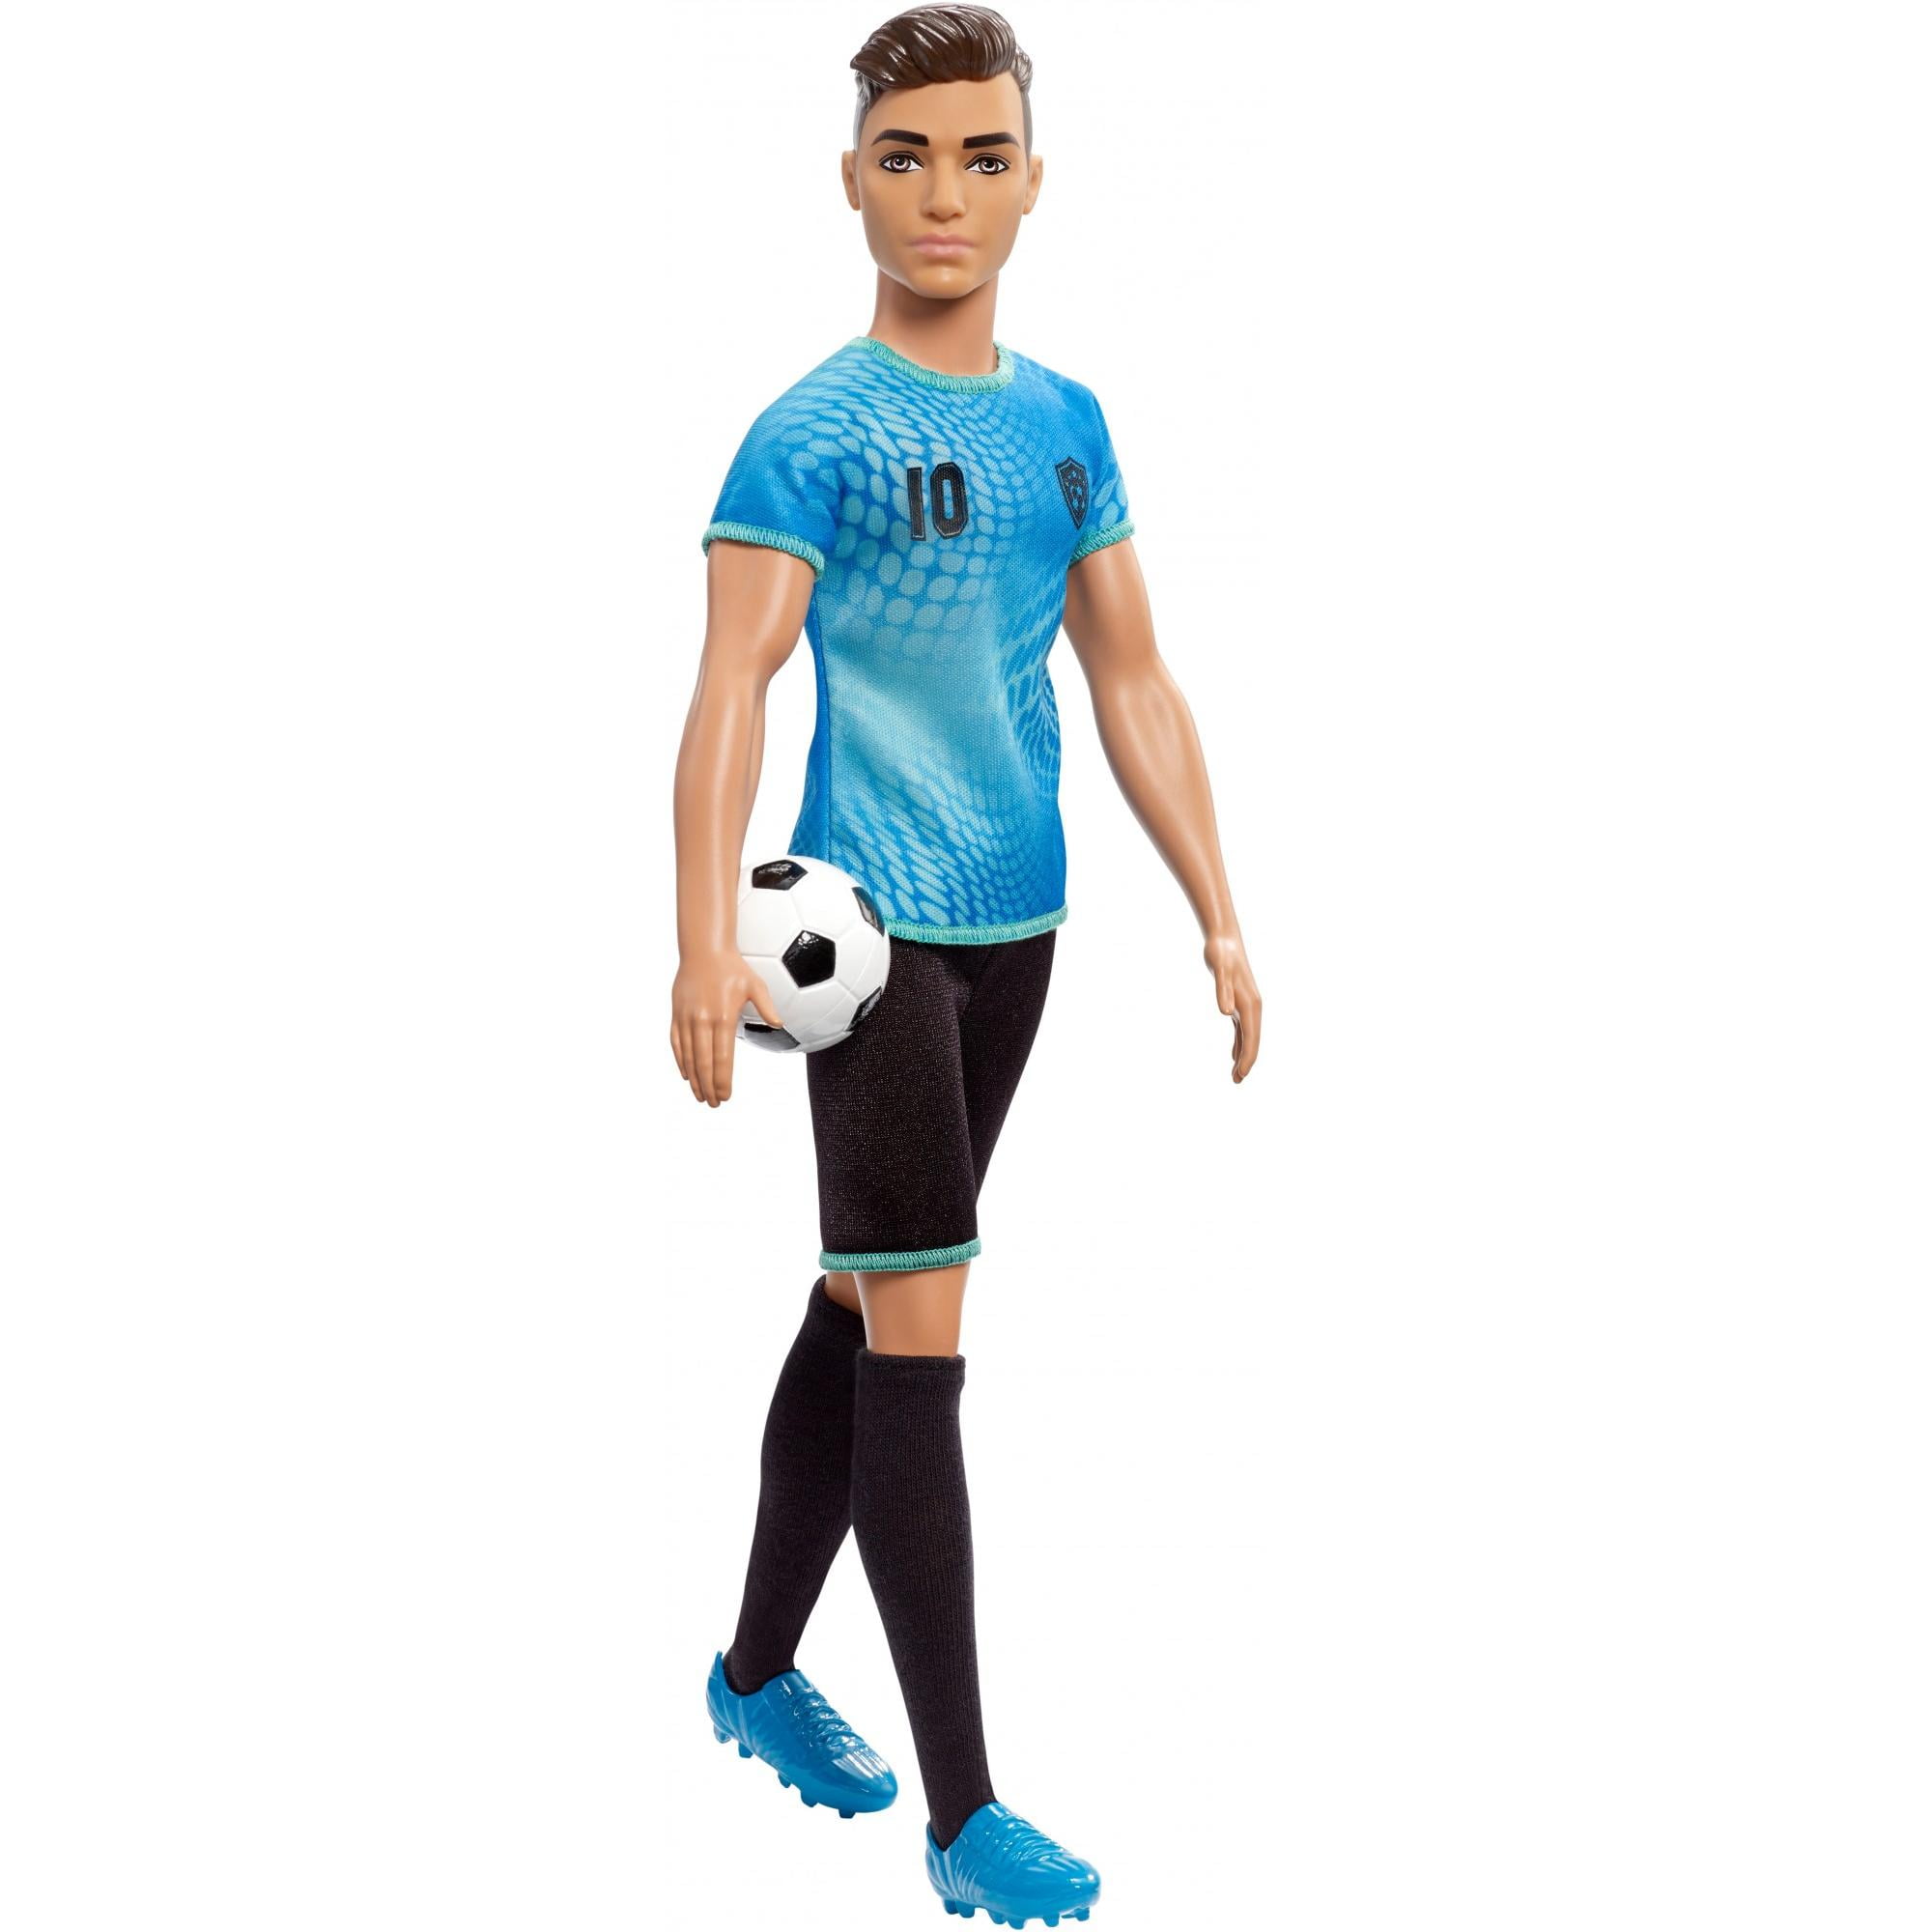 Ken Careers Footballer Doll 